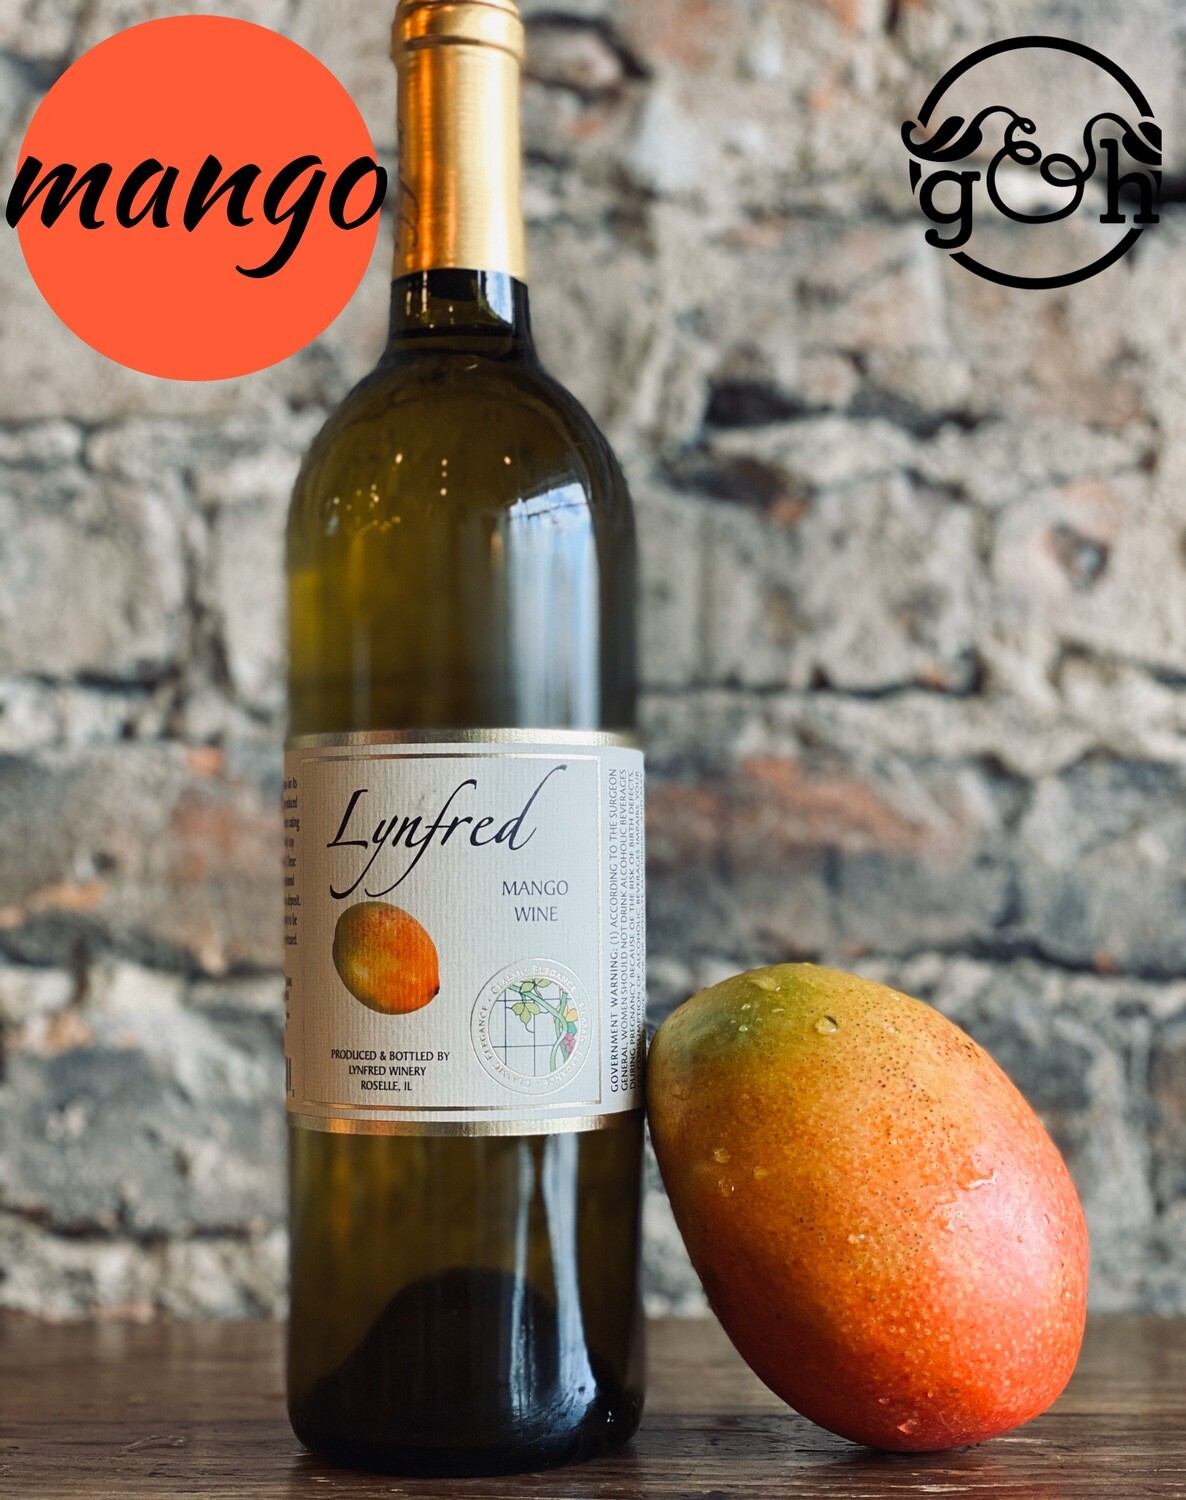 Lynfred Winery Mango-Bottle